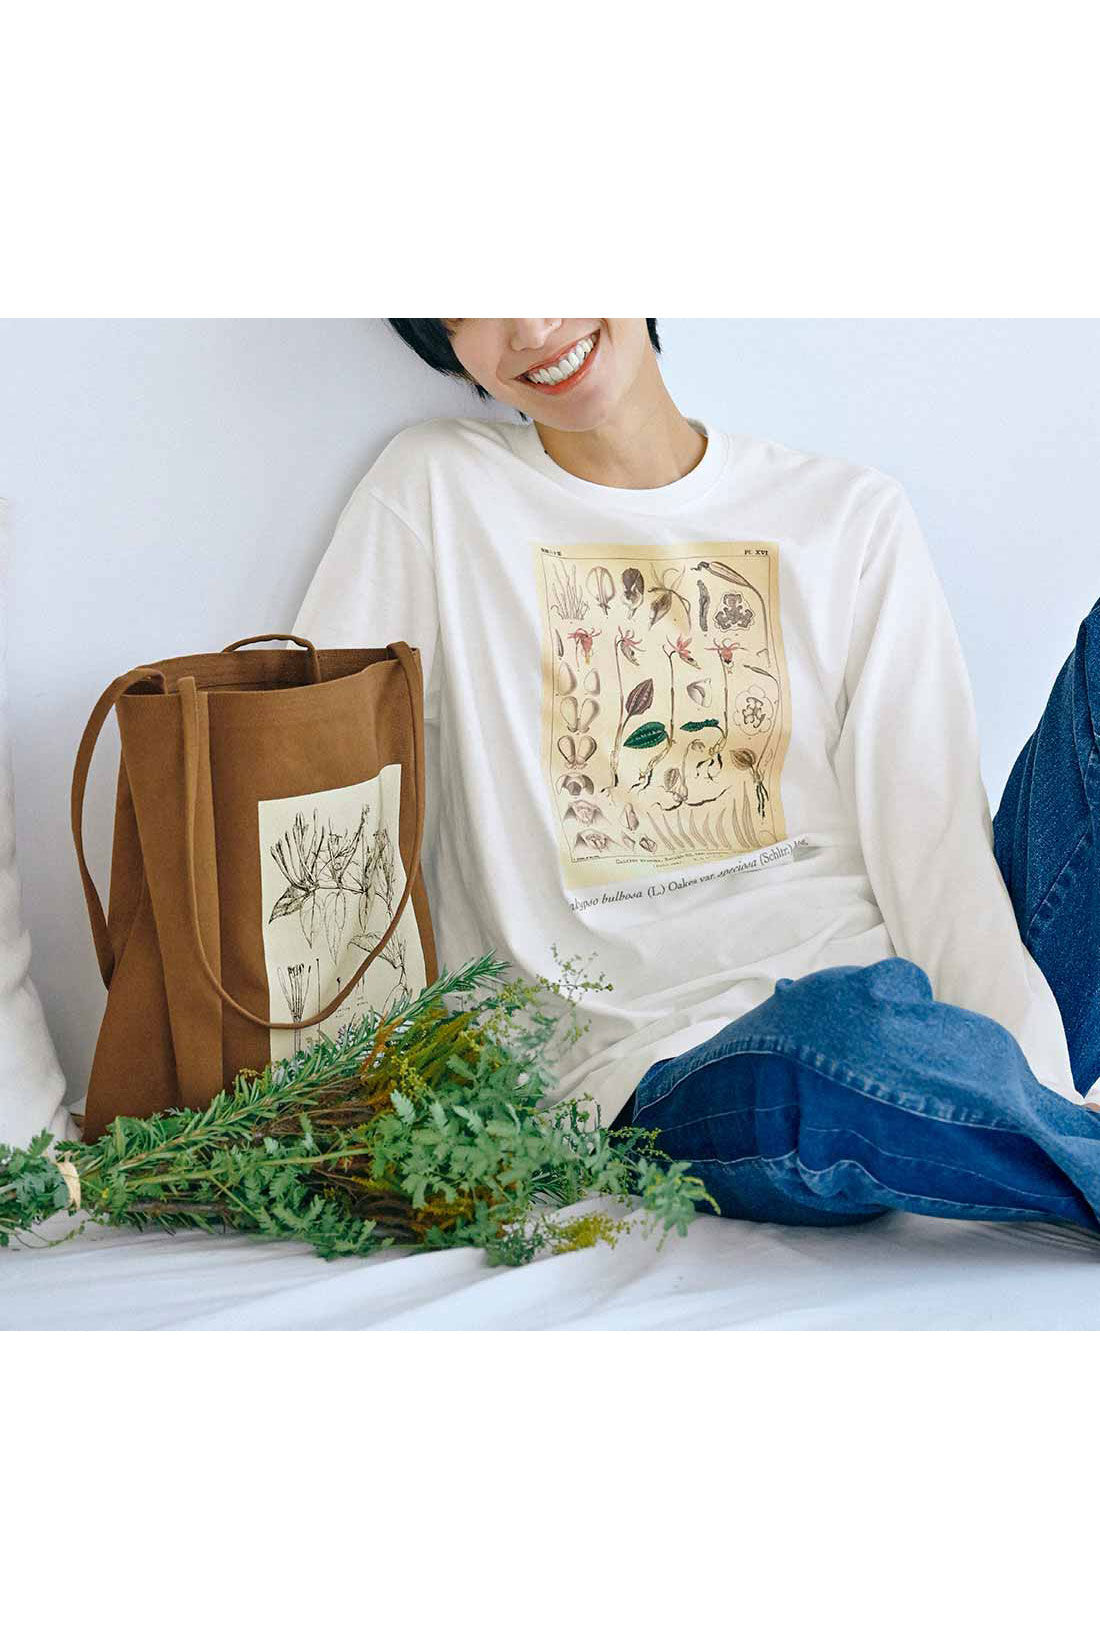 IEDIT|牧野植物園×IEDIT[イディット]コラボ 牧野博士の描いた植物図プリントTシャツの会